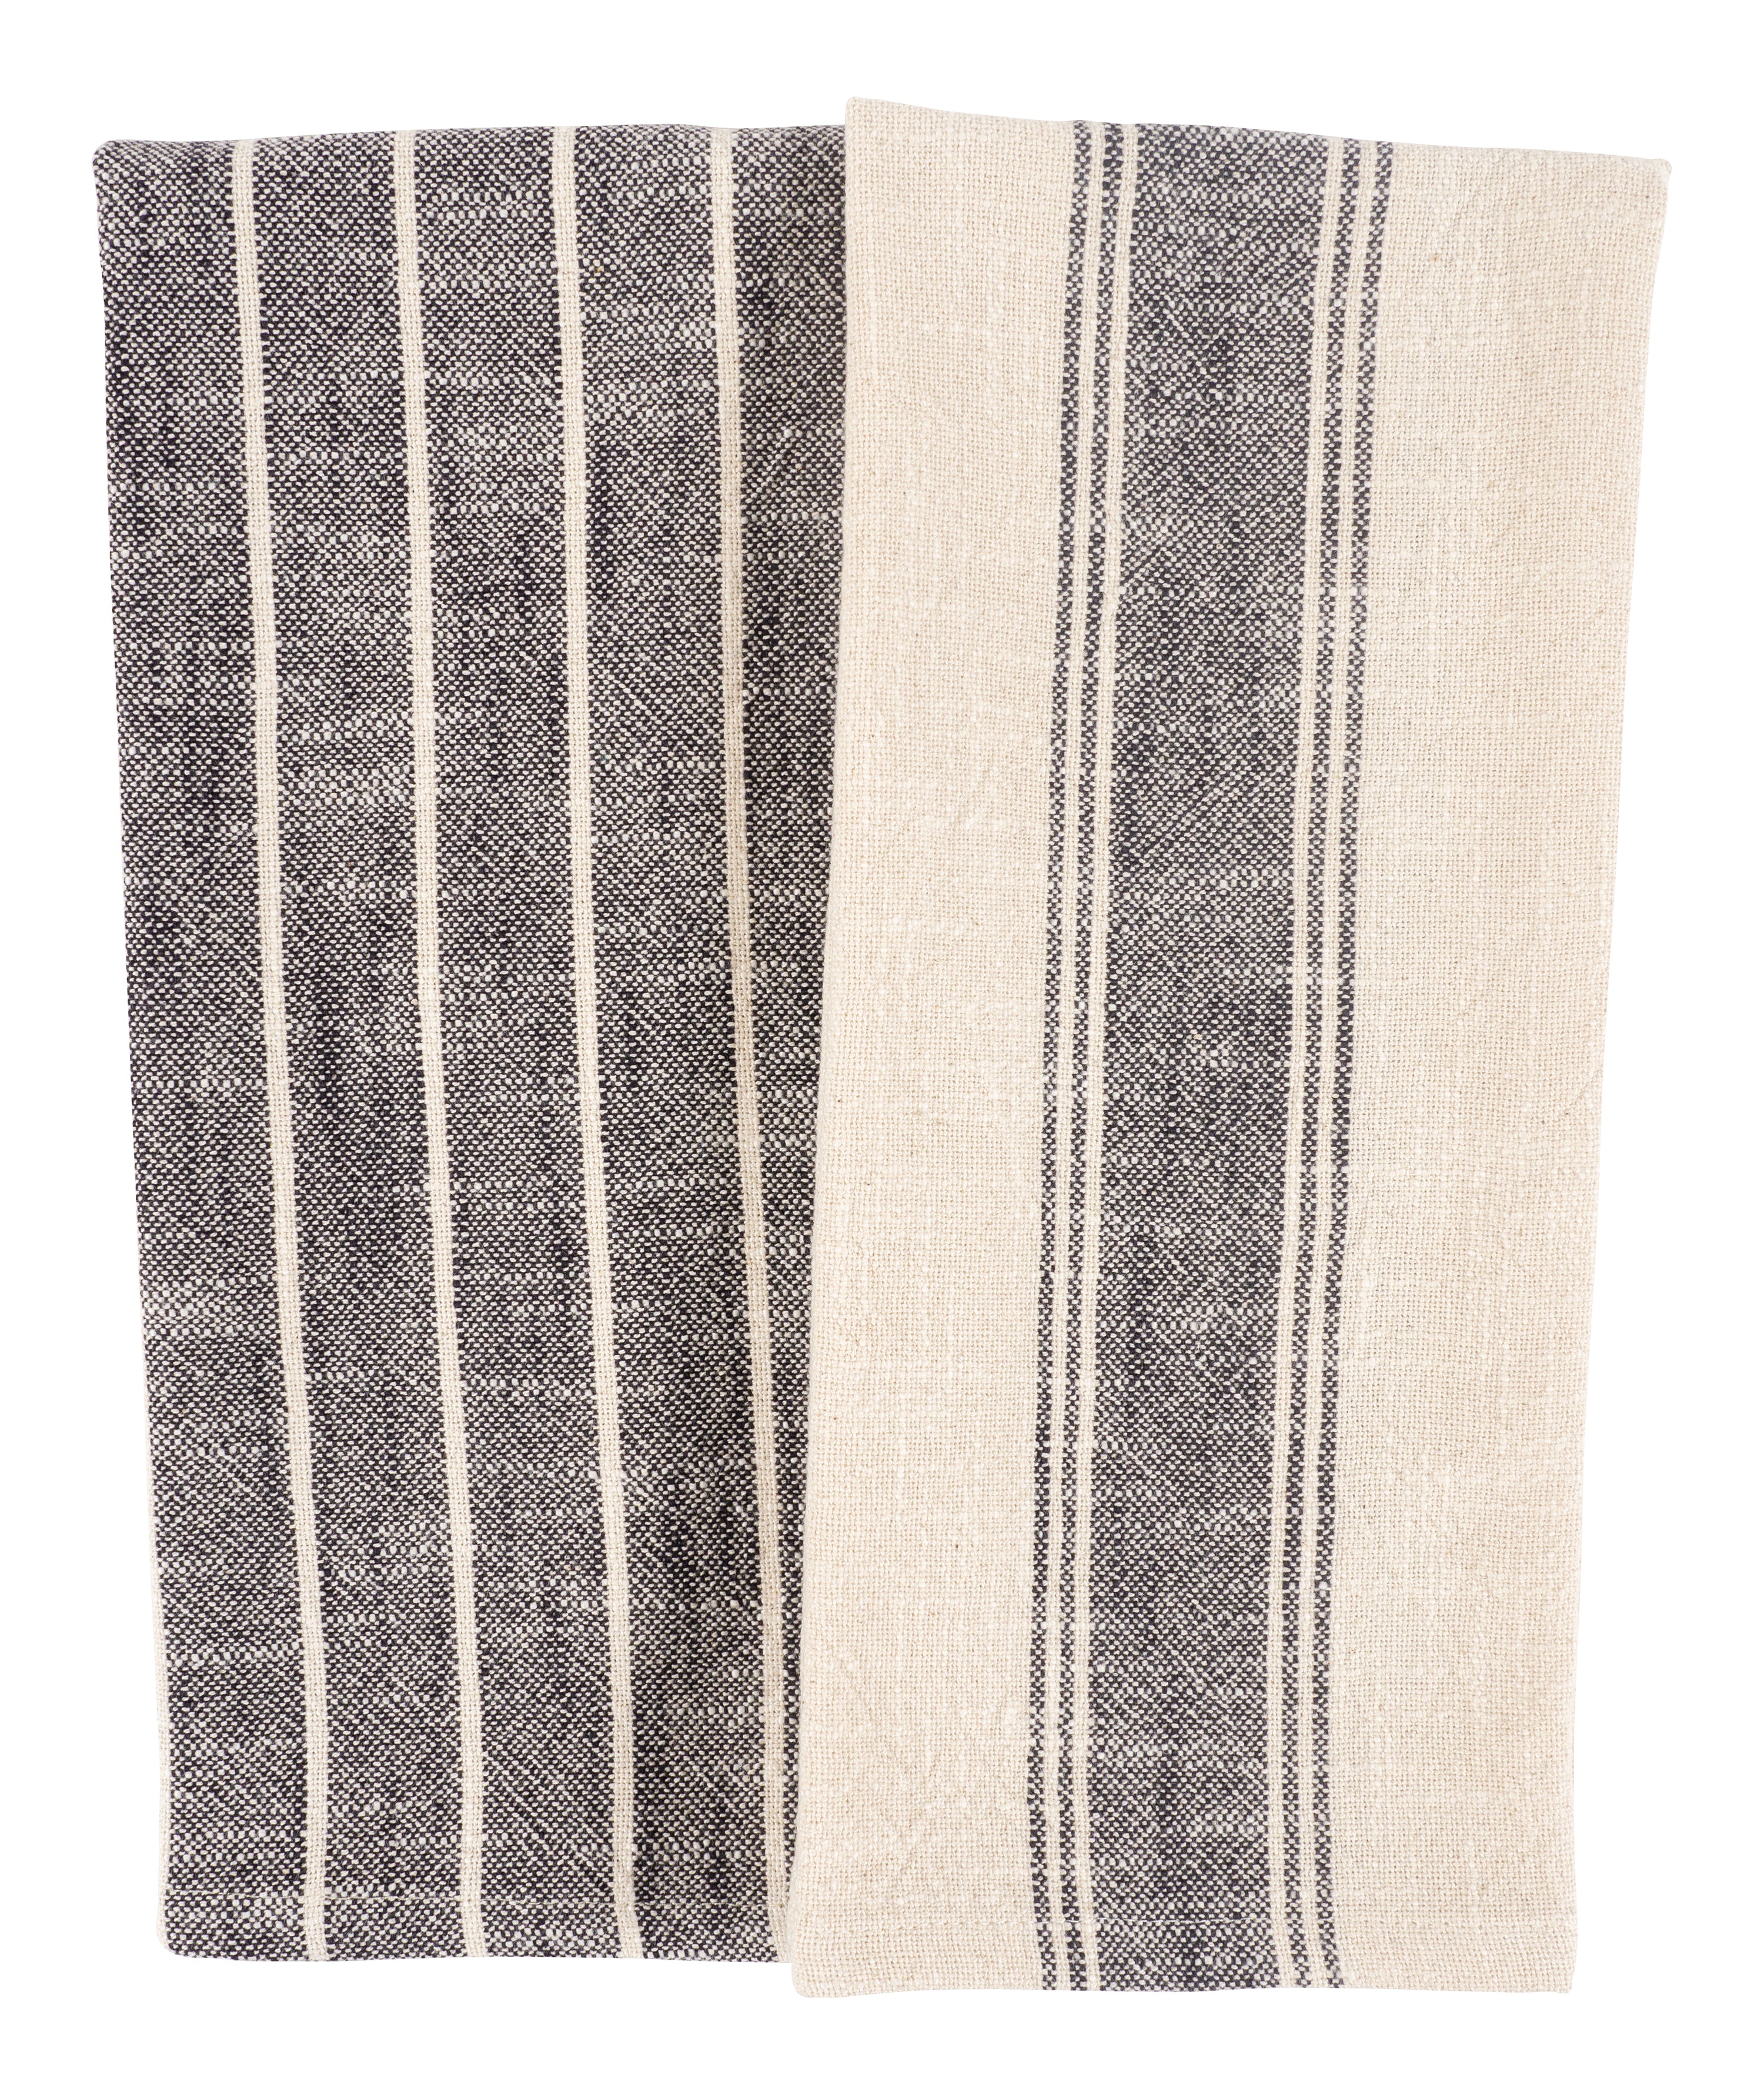 Rustic Linen Kitchen Towel